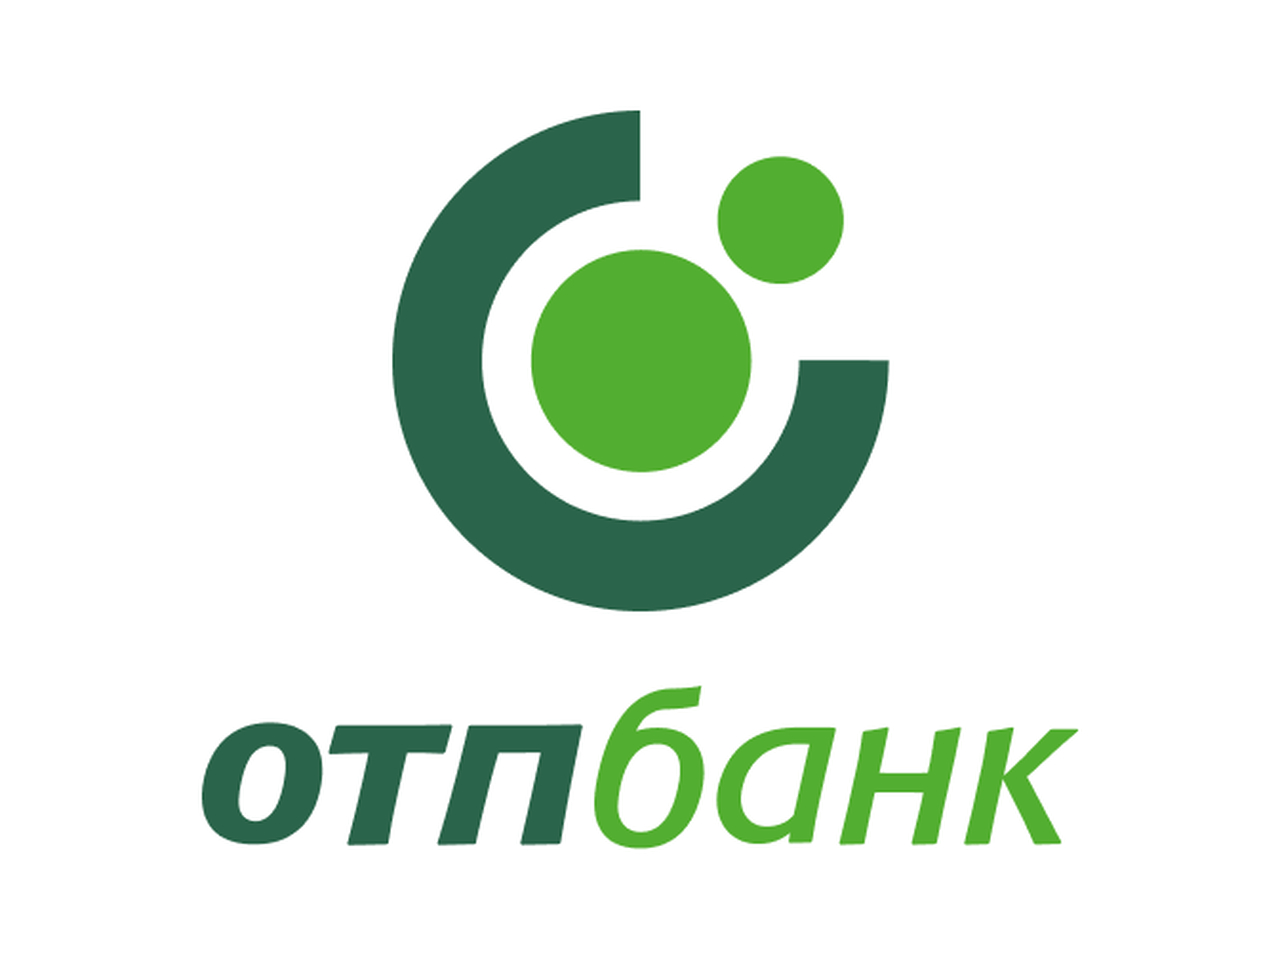 Https r otpbank ru. ОТП банк логотип. ОТП банк лого. DSK Bank. ОТП банка ЧМЗ.